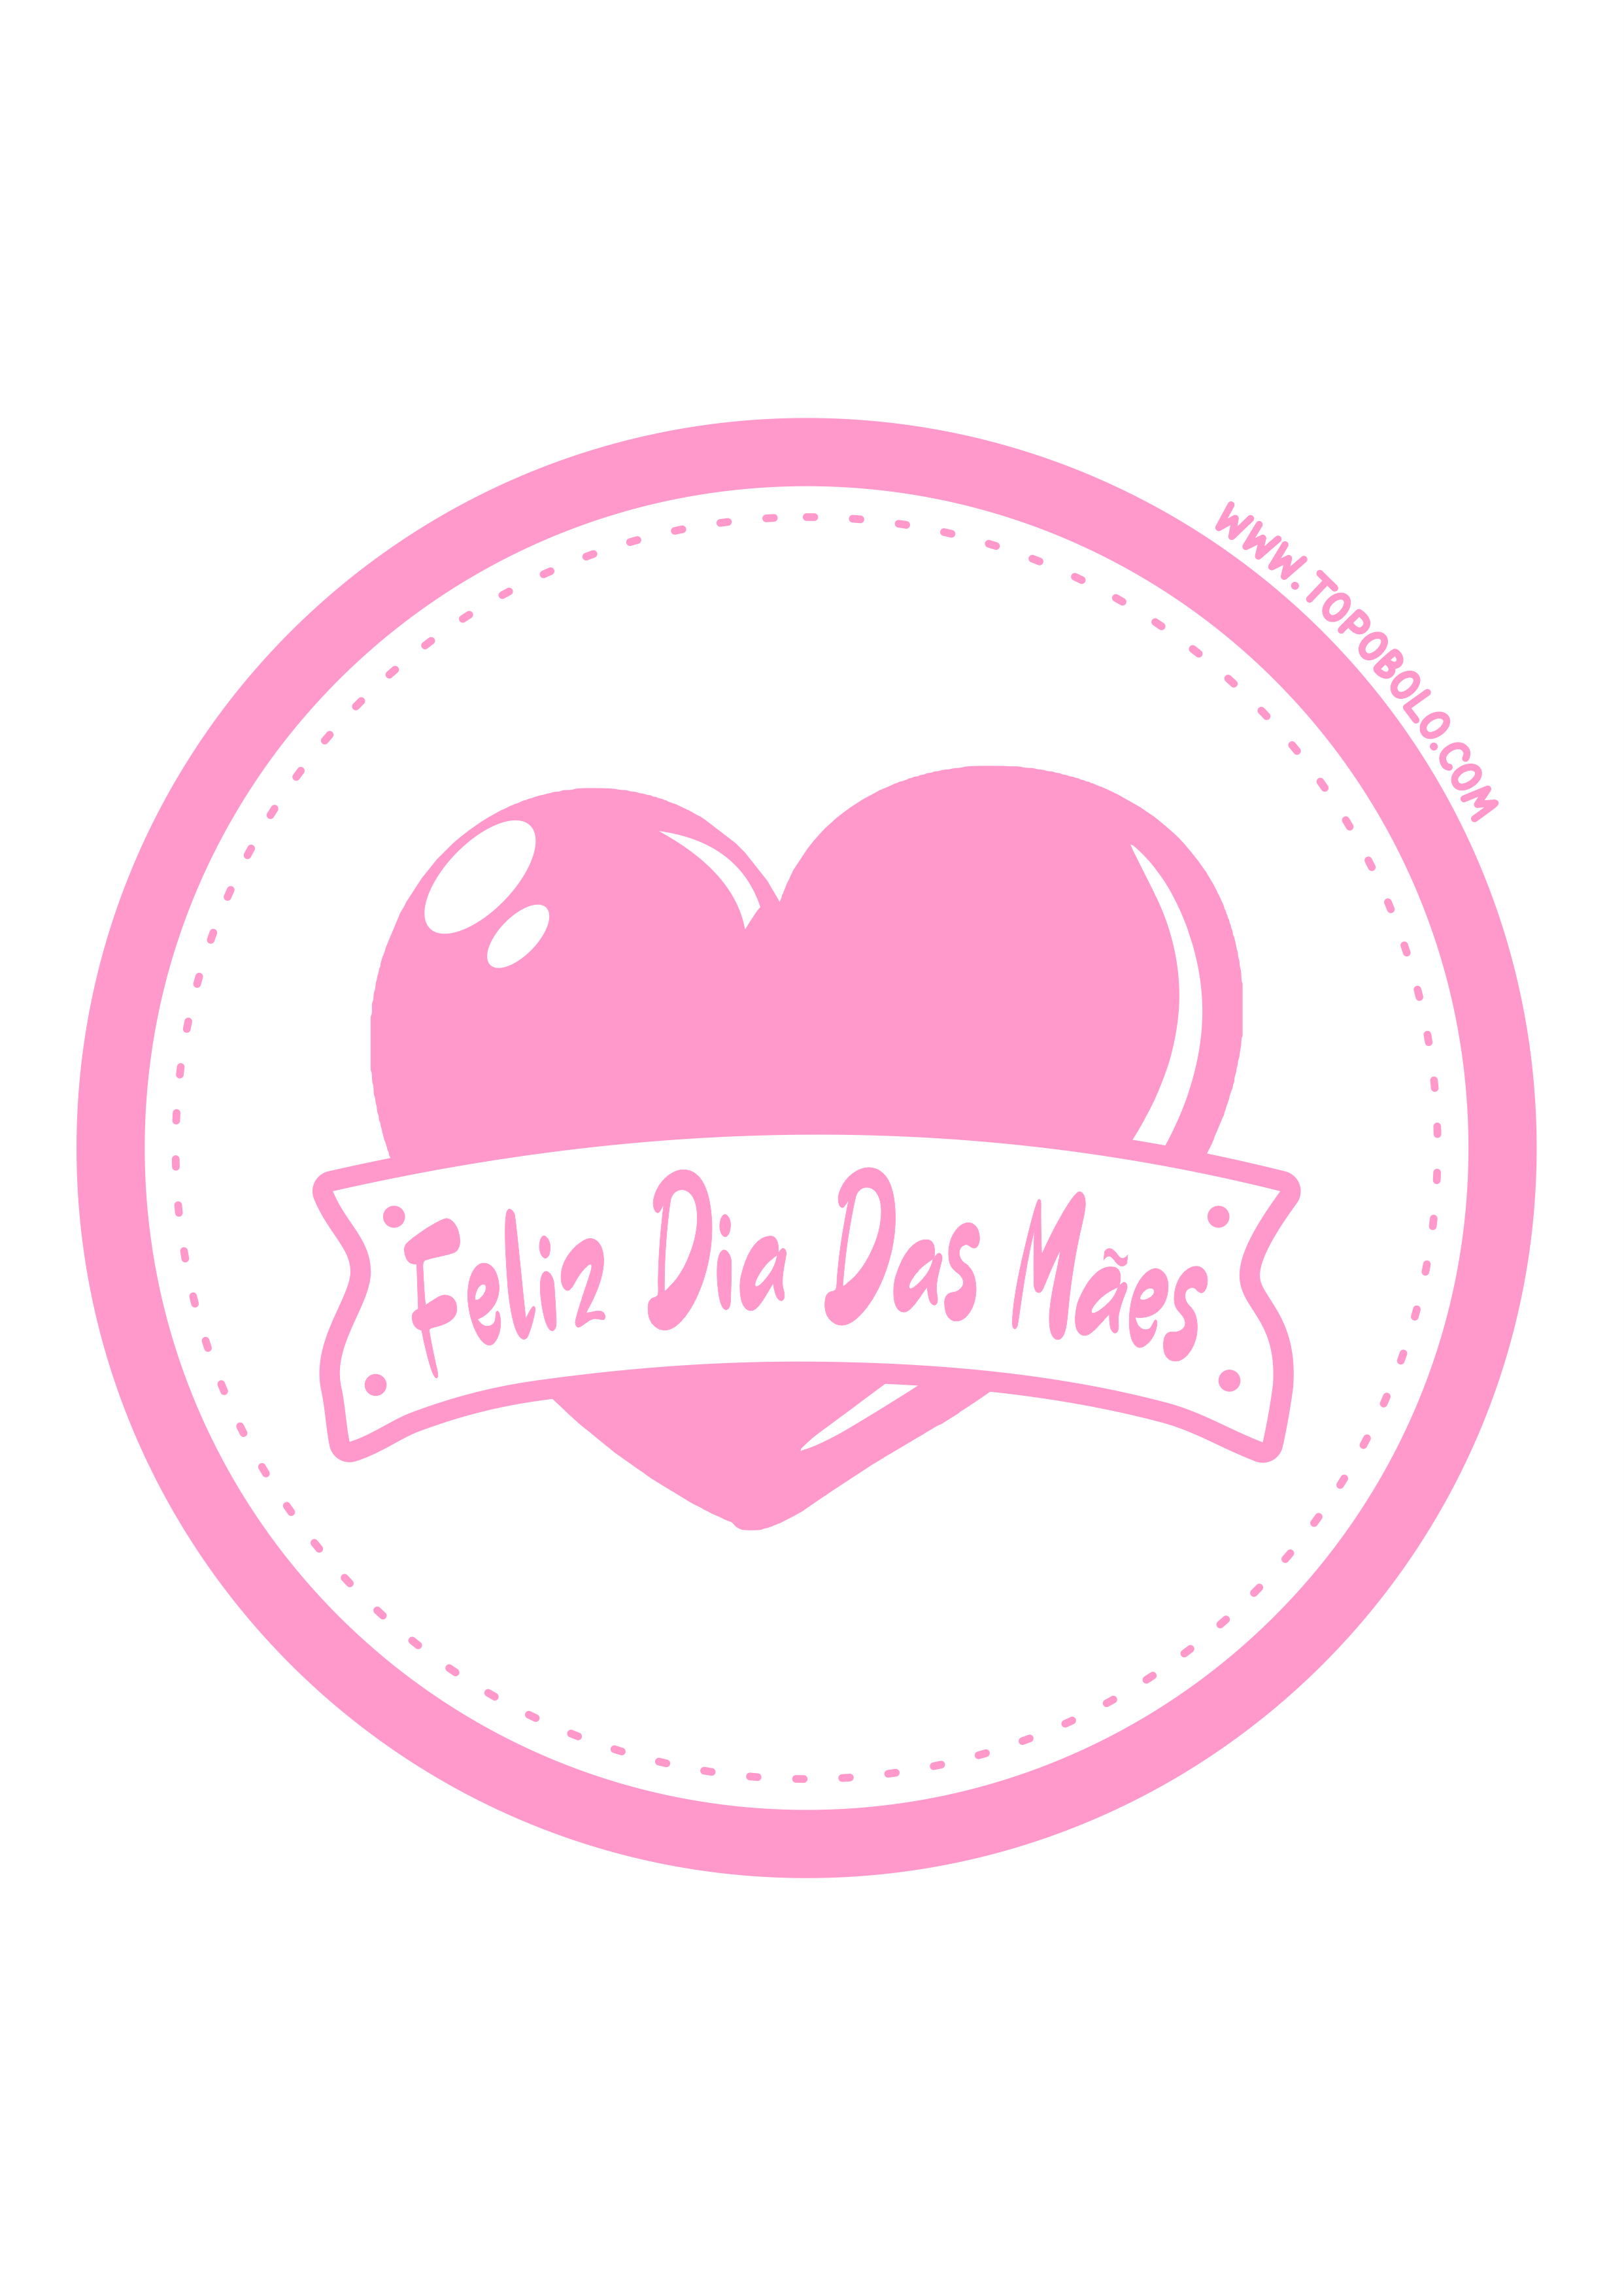 Feliz dia das mães decoração rosa claro pronto para imprimir adesivo redondo tag sticker papelaria criativa png